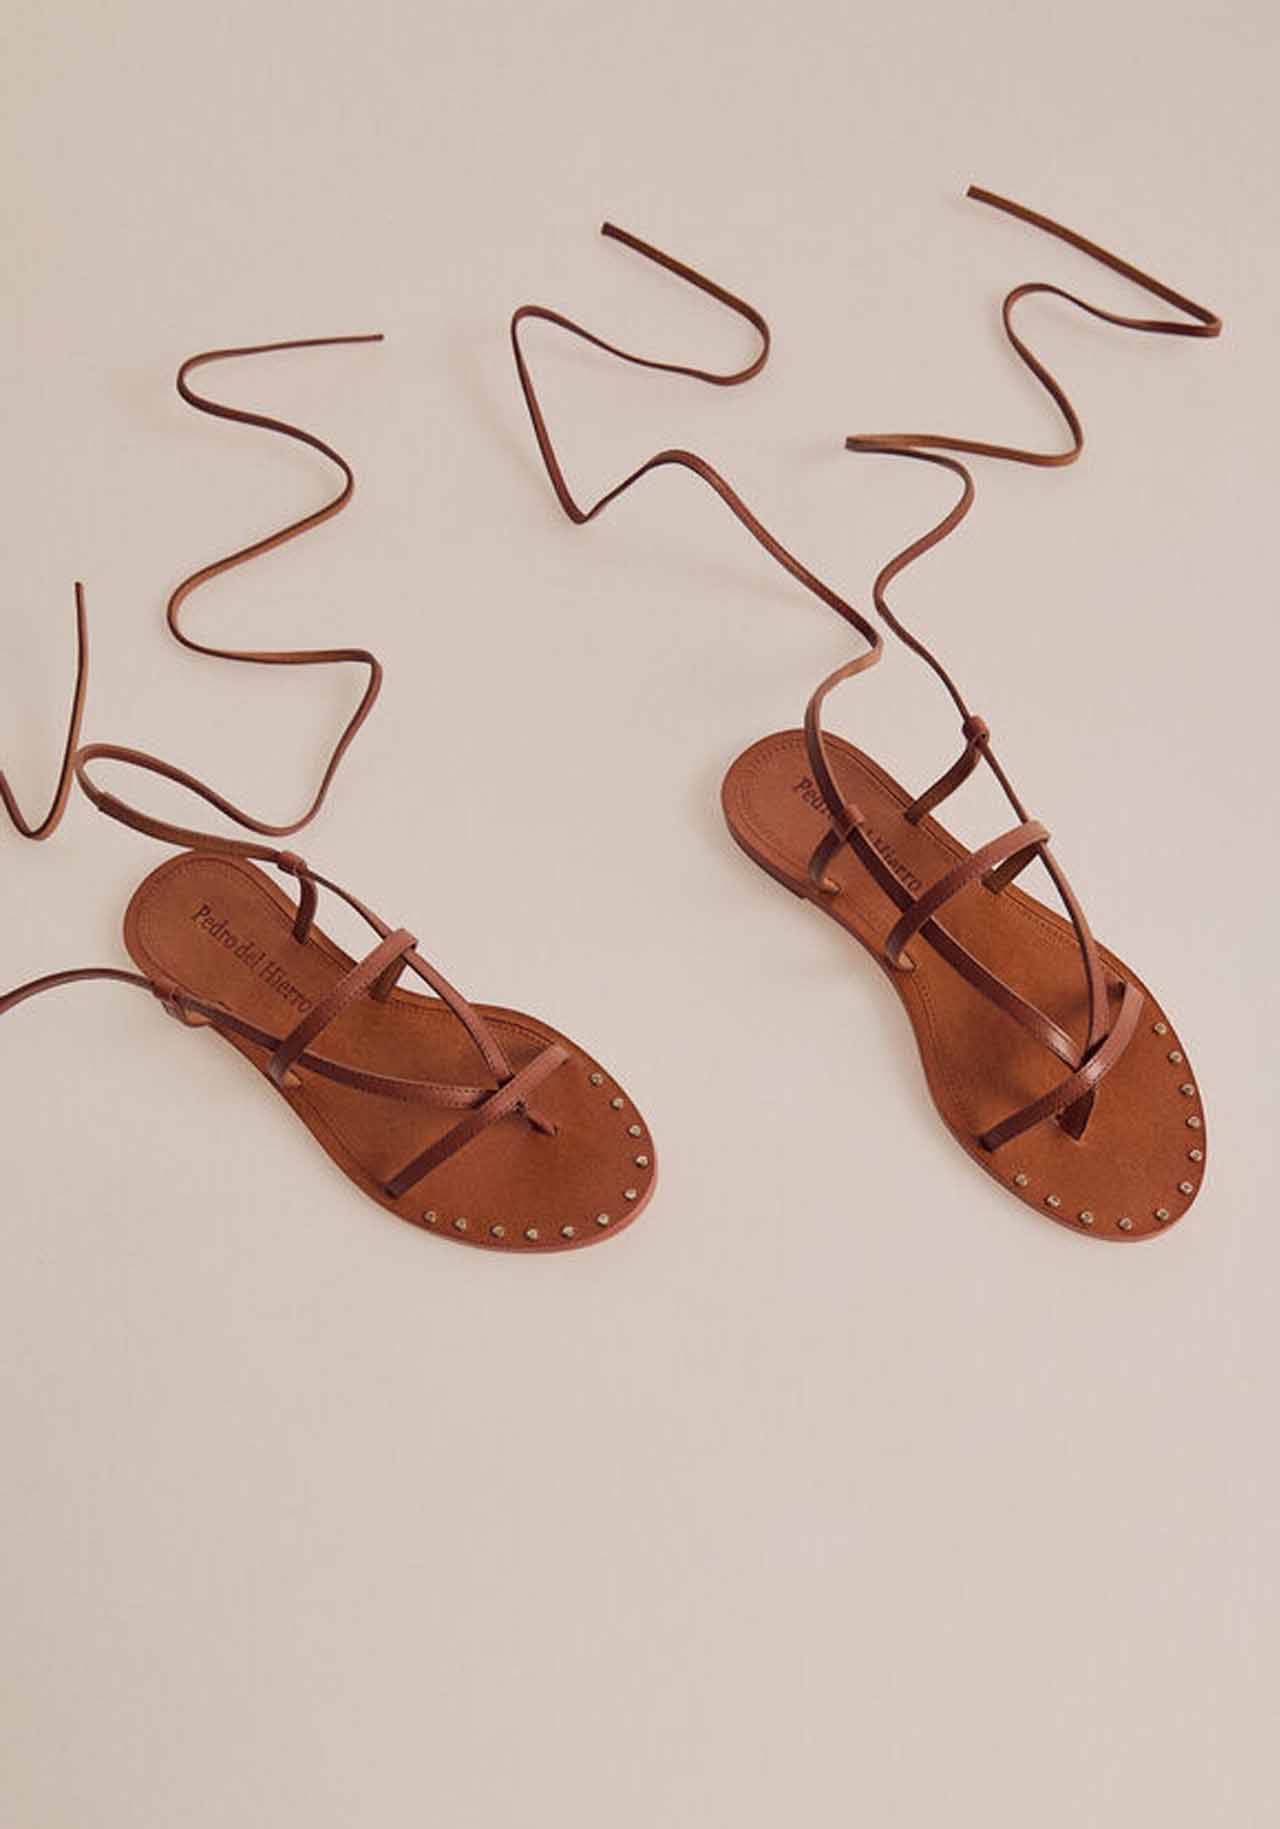 Sandalias planas en color marrón